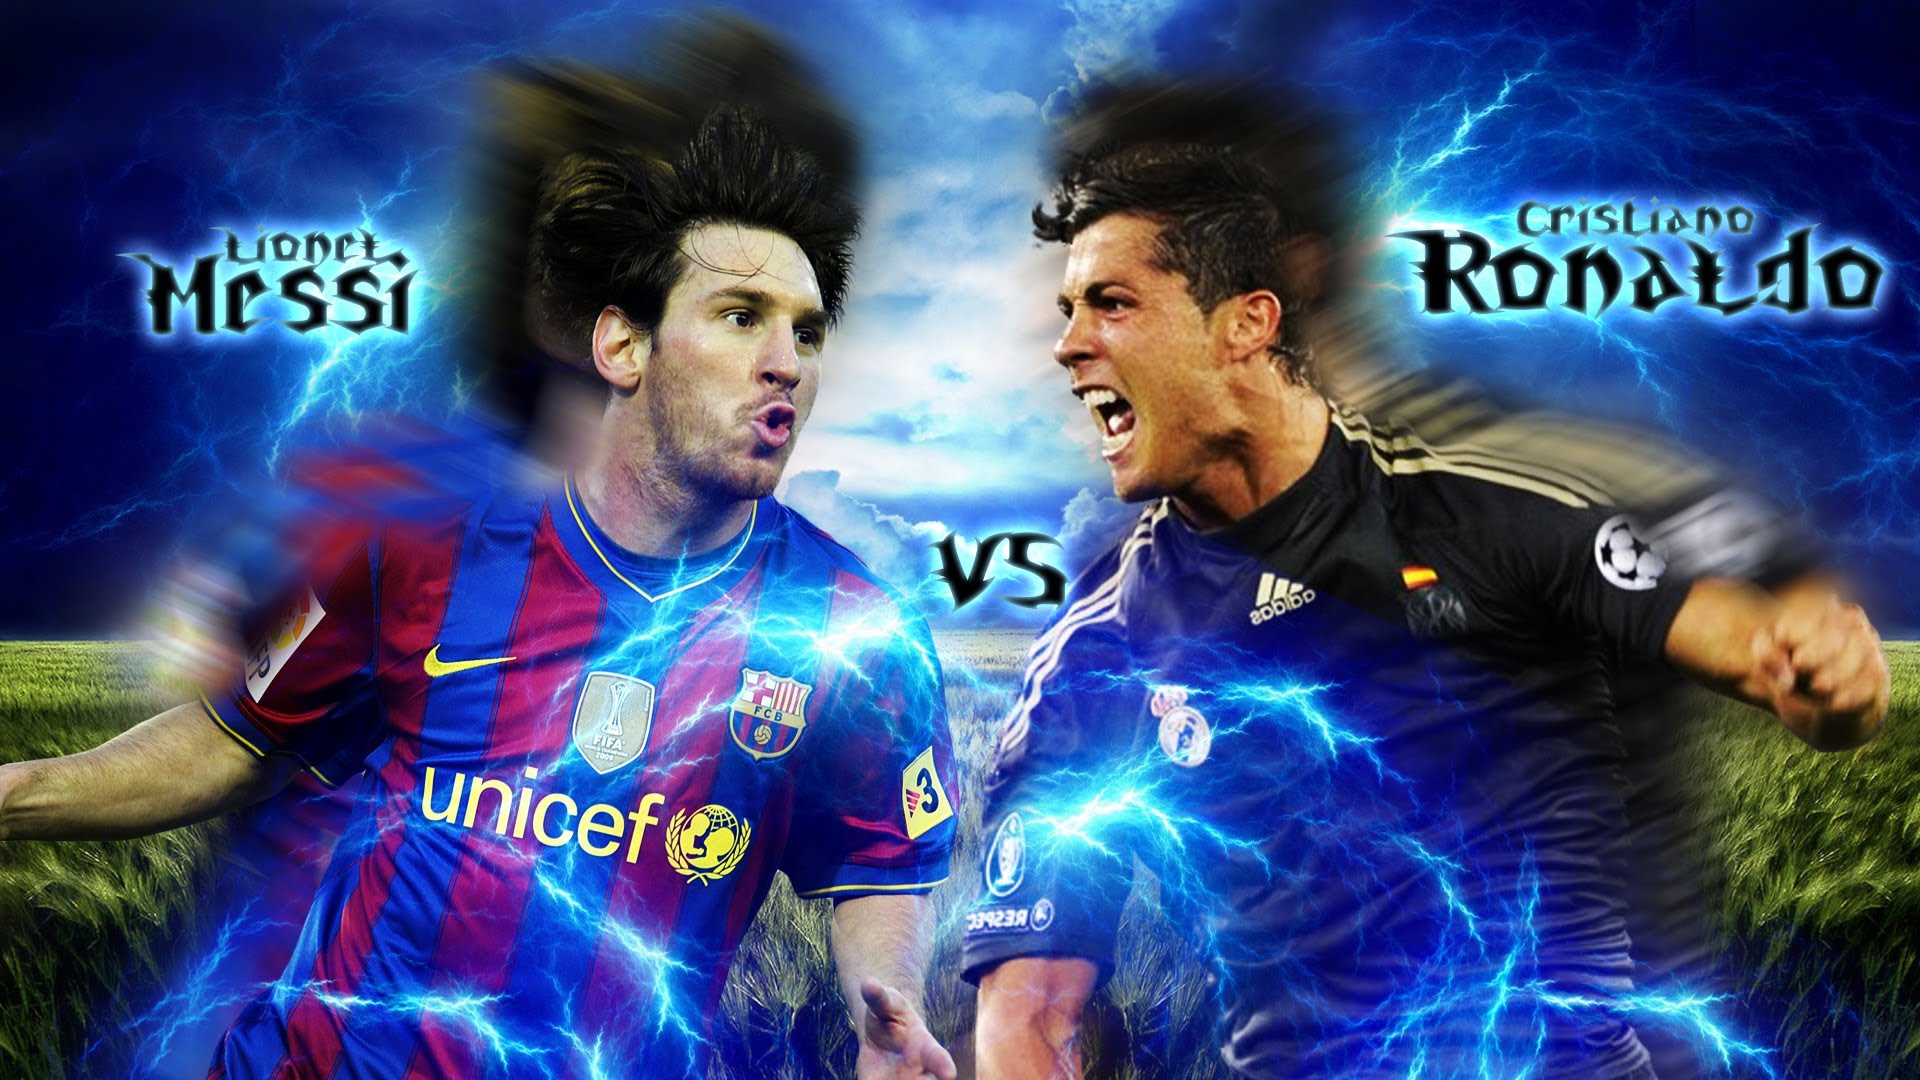 Lionel Messi V S Cristiano Ronaldo Wallpaper In Adobe Photoshop